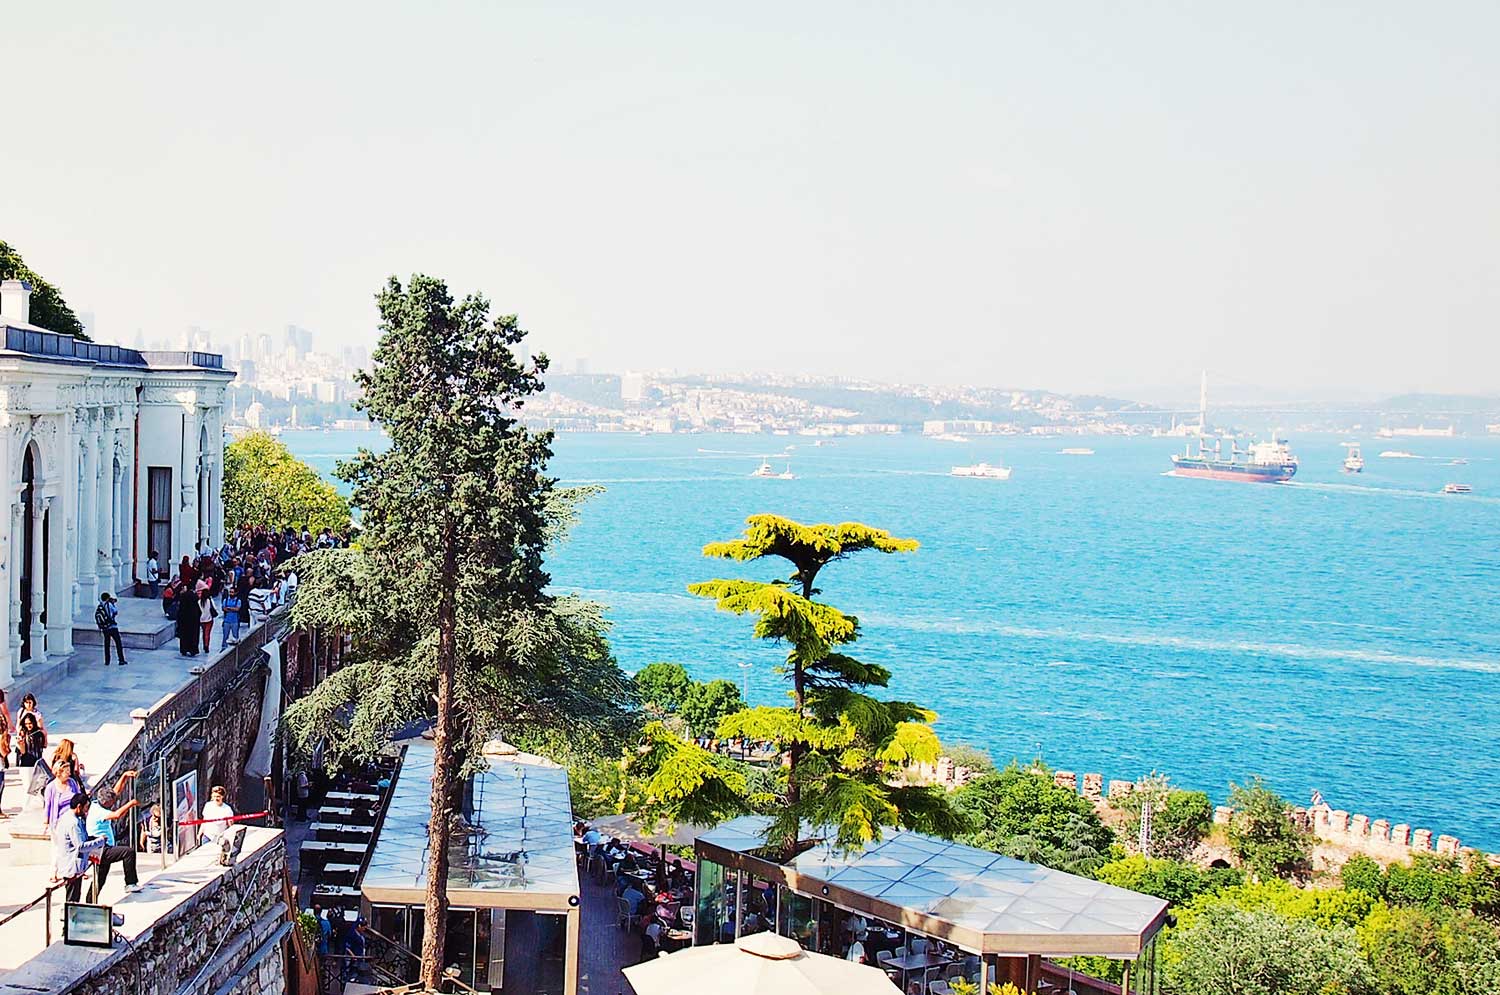 Istanbul, Turkey - Celebrity Cruise Vacation